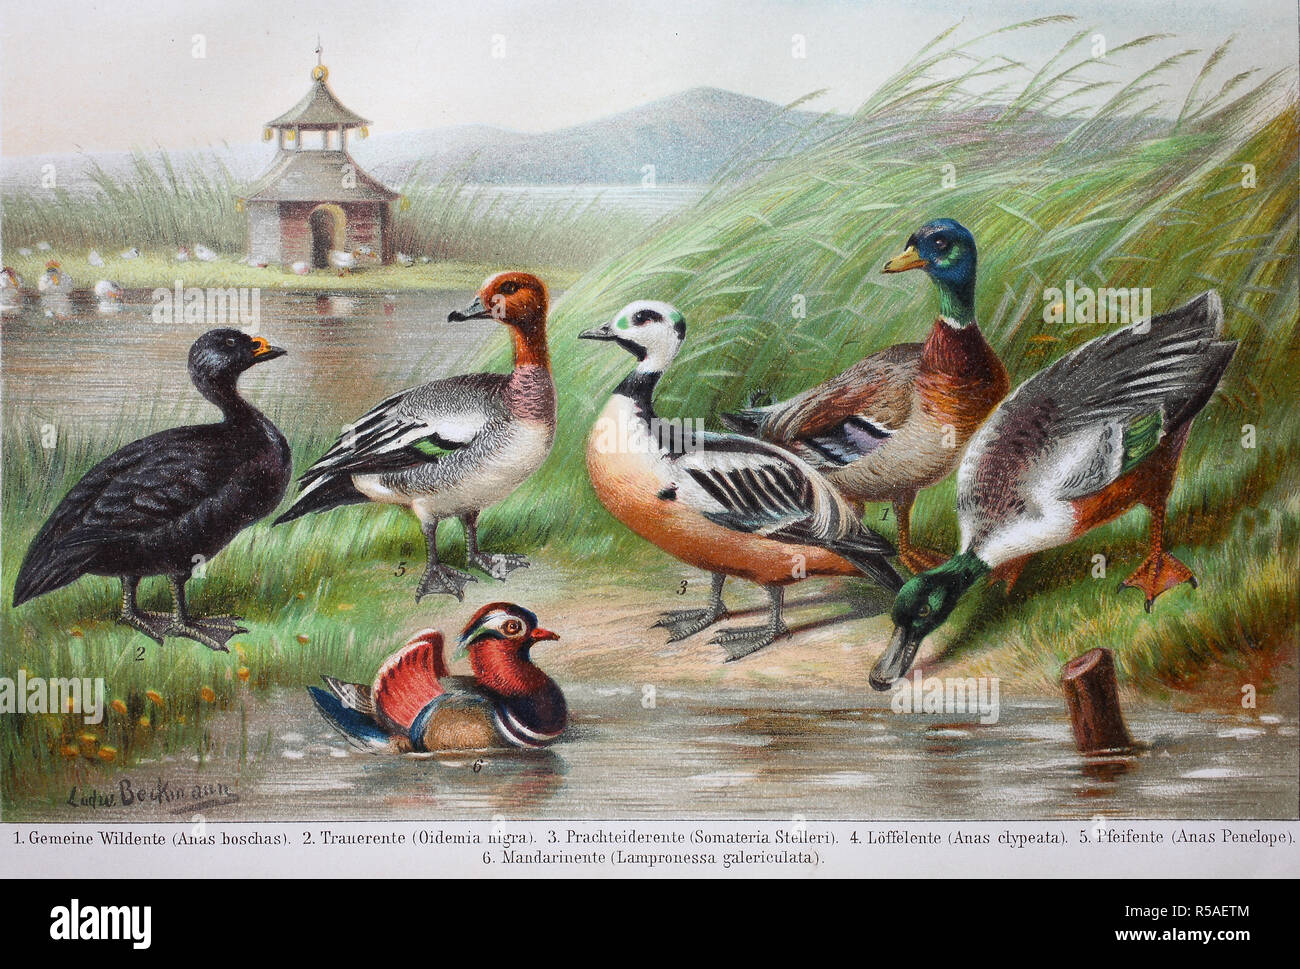 Historical images of ducks, Anas boschas, Oidemia nigra, Somateria Stelleri, Anas clypeata, Anas penelope Stock Photo